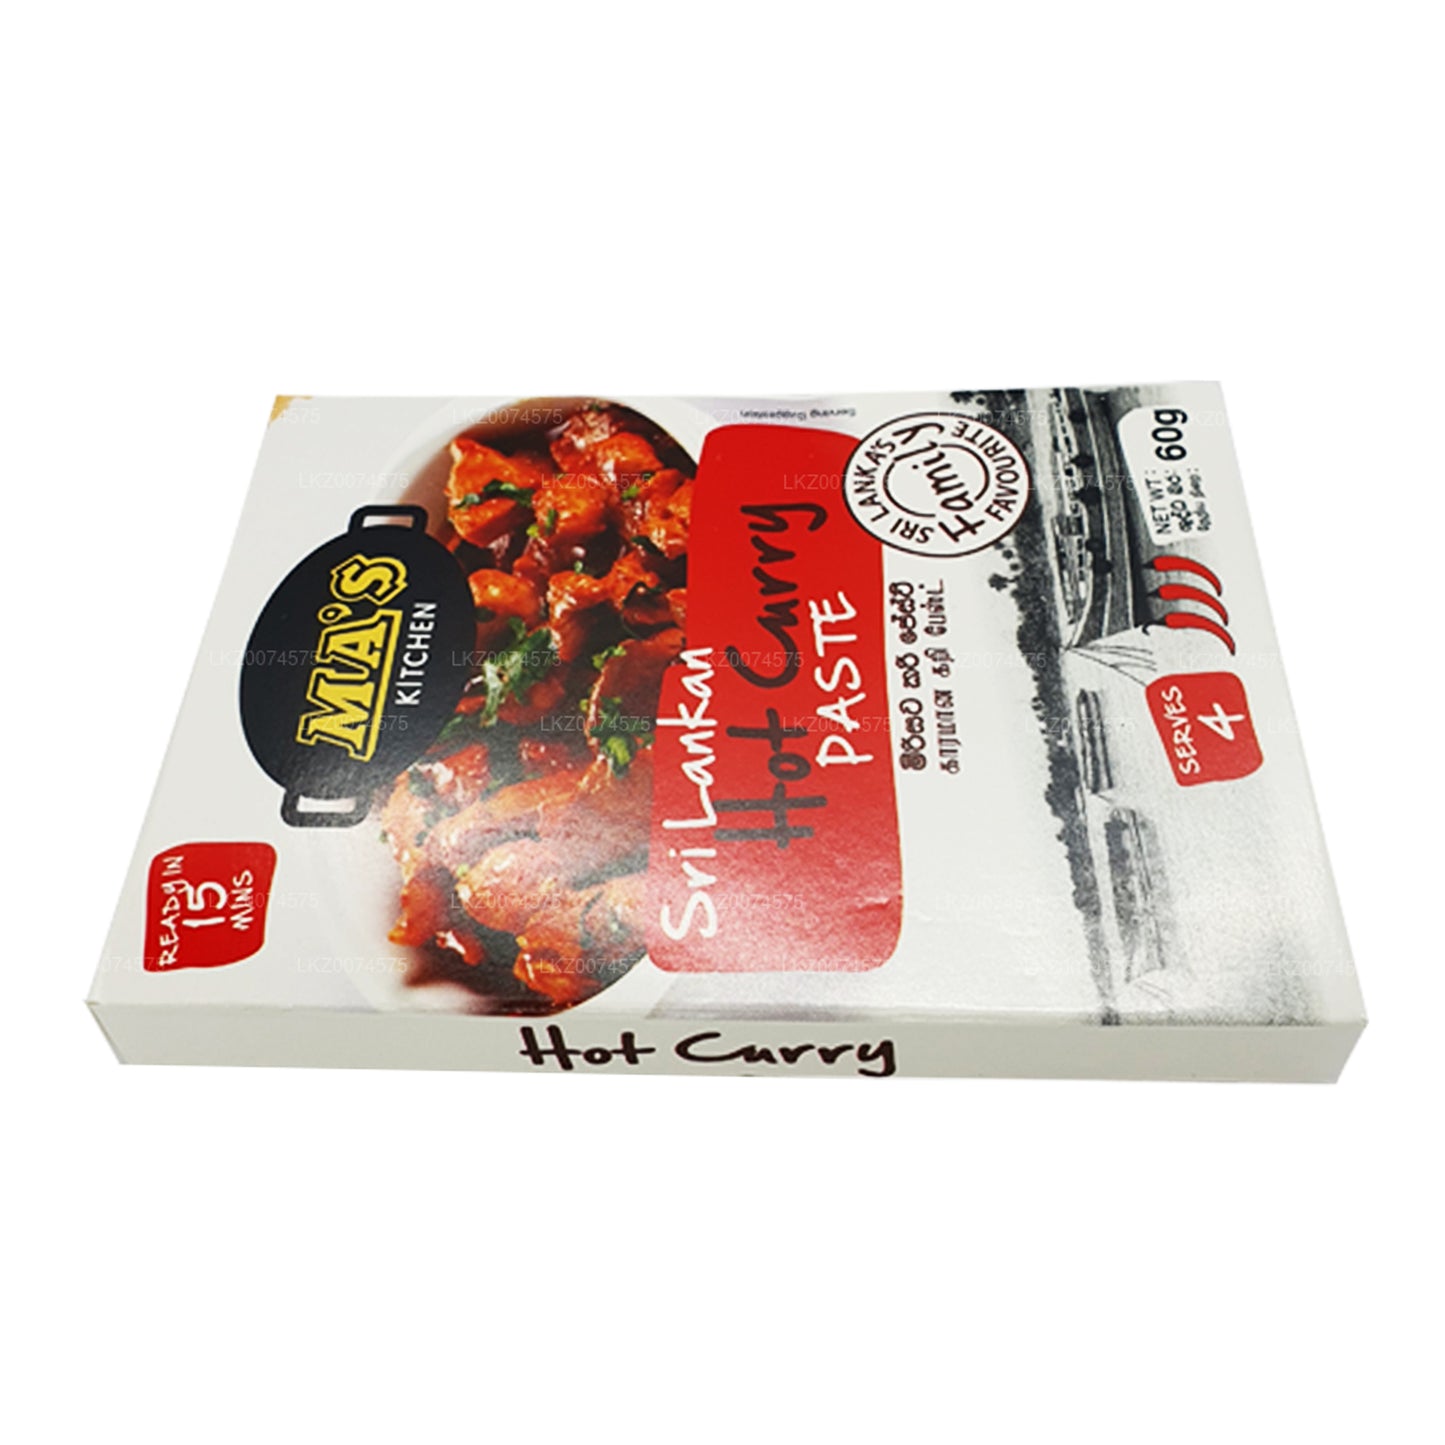 MA's Kitchen Sri Lankaanse warme currypasta (60 g)